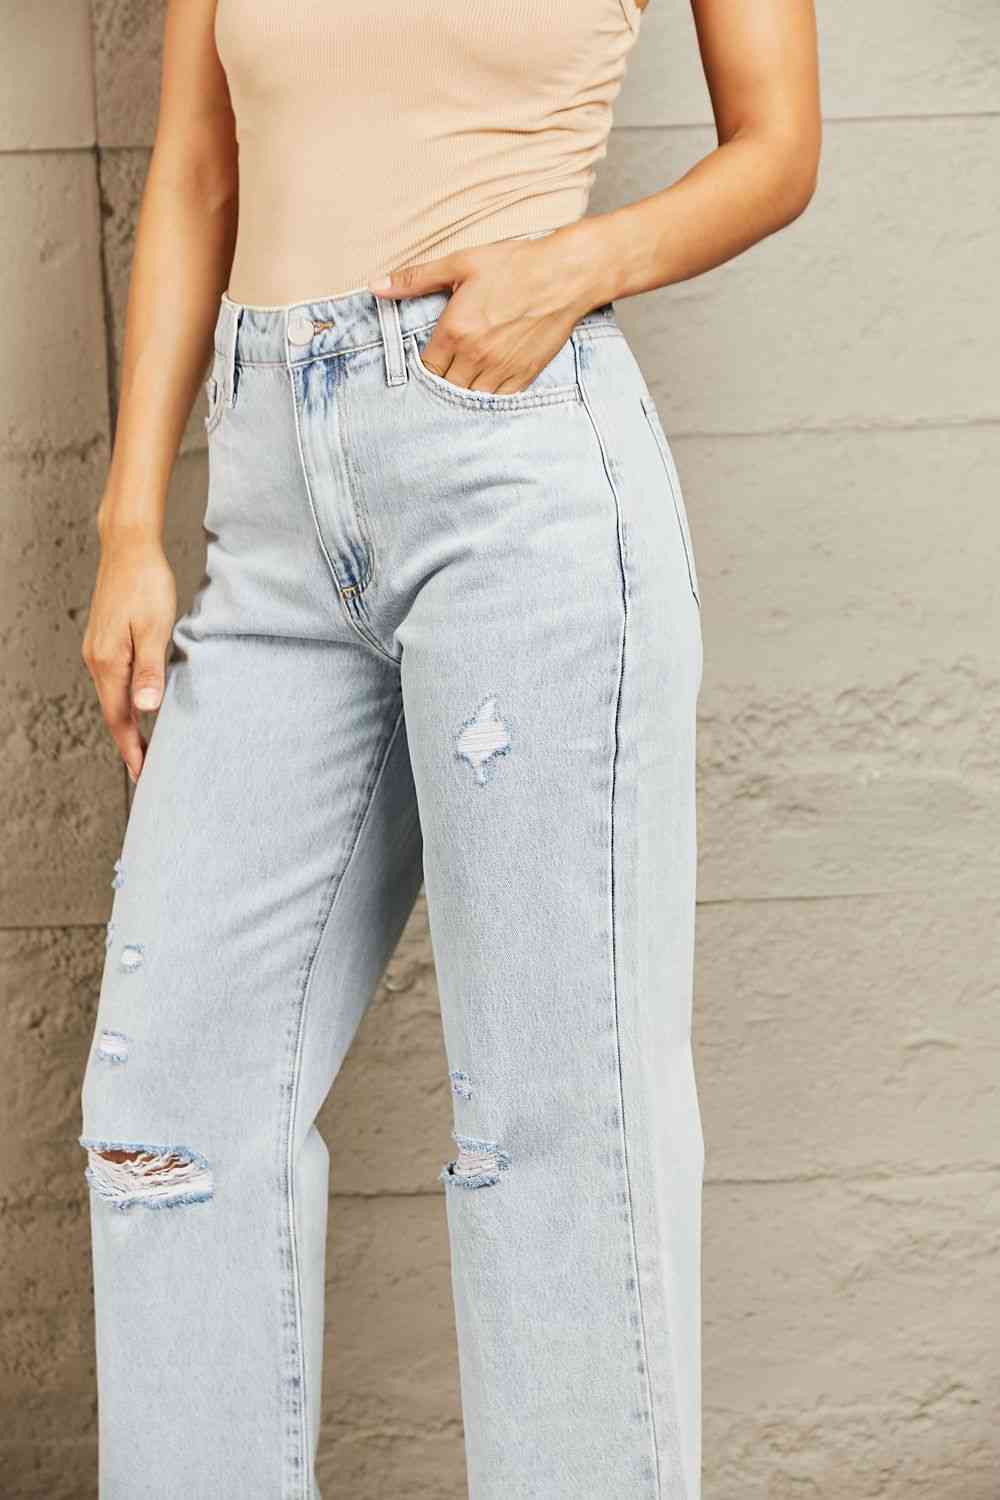 BAYEAS High Waist Flare Jeans - EMMY